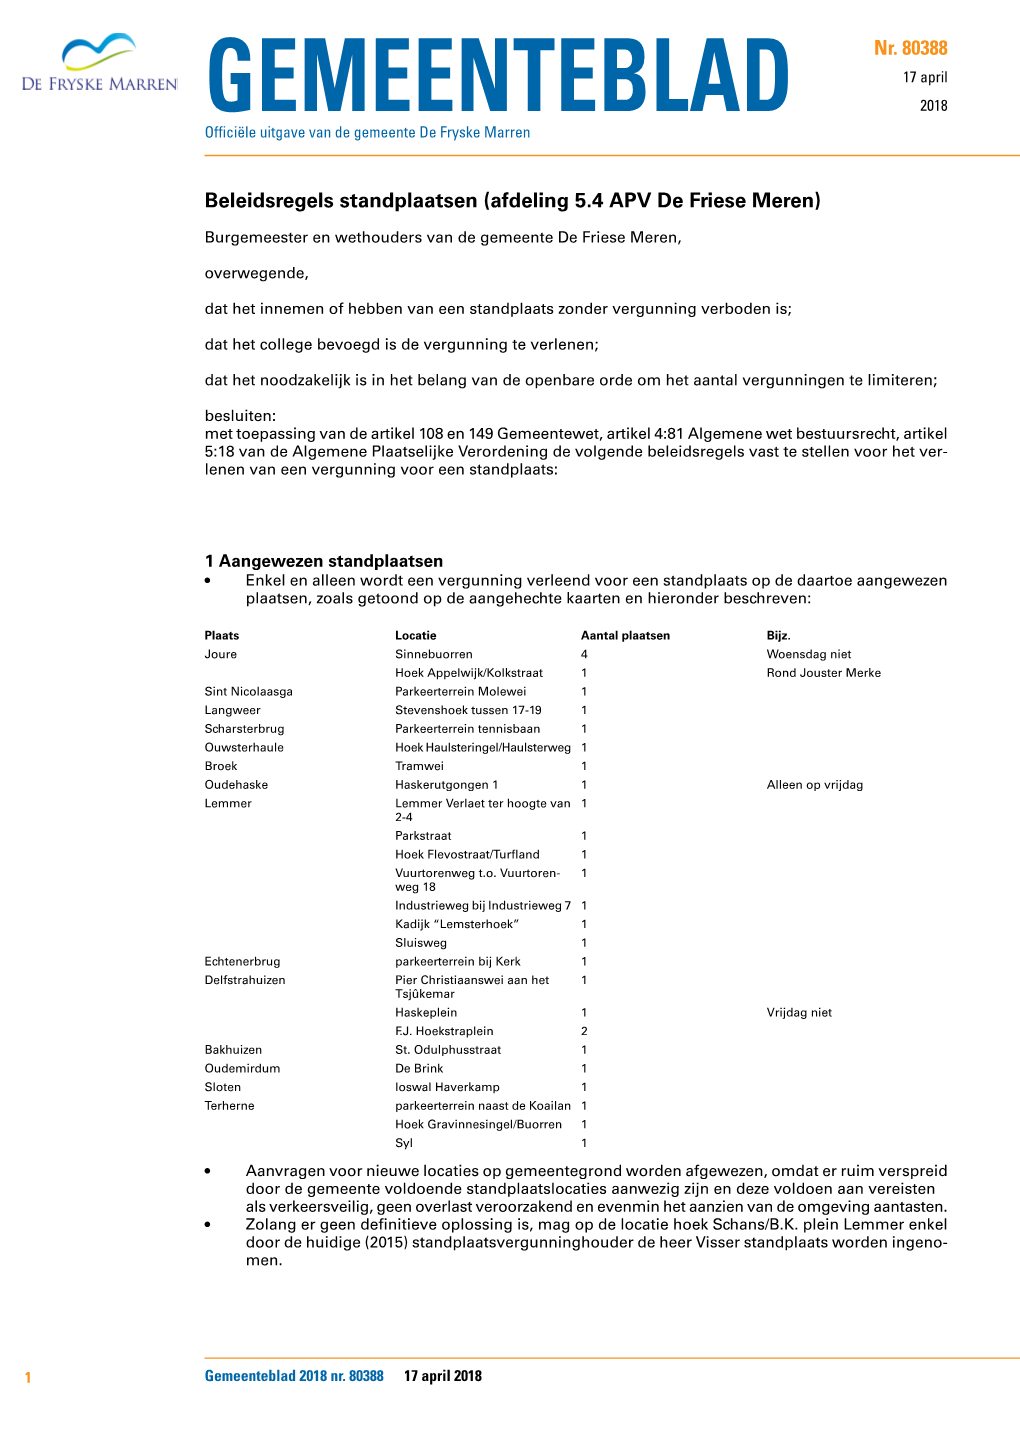 Beleidsregels Standplaatsen (Afdeling 5.4 APV De Friese Meren)